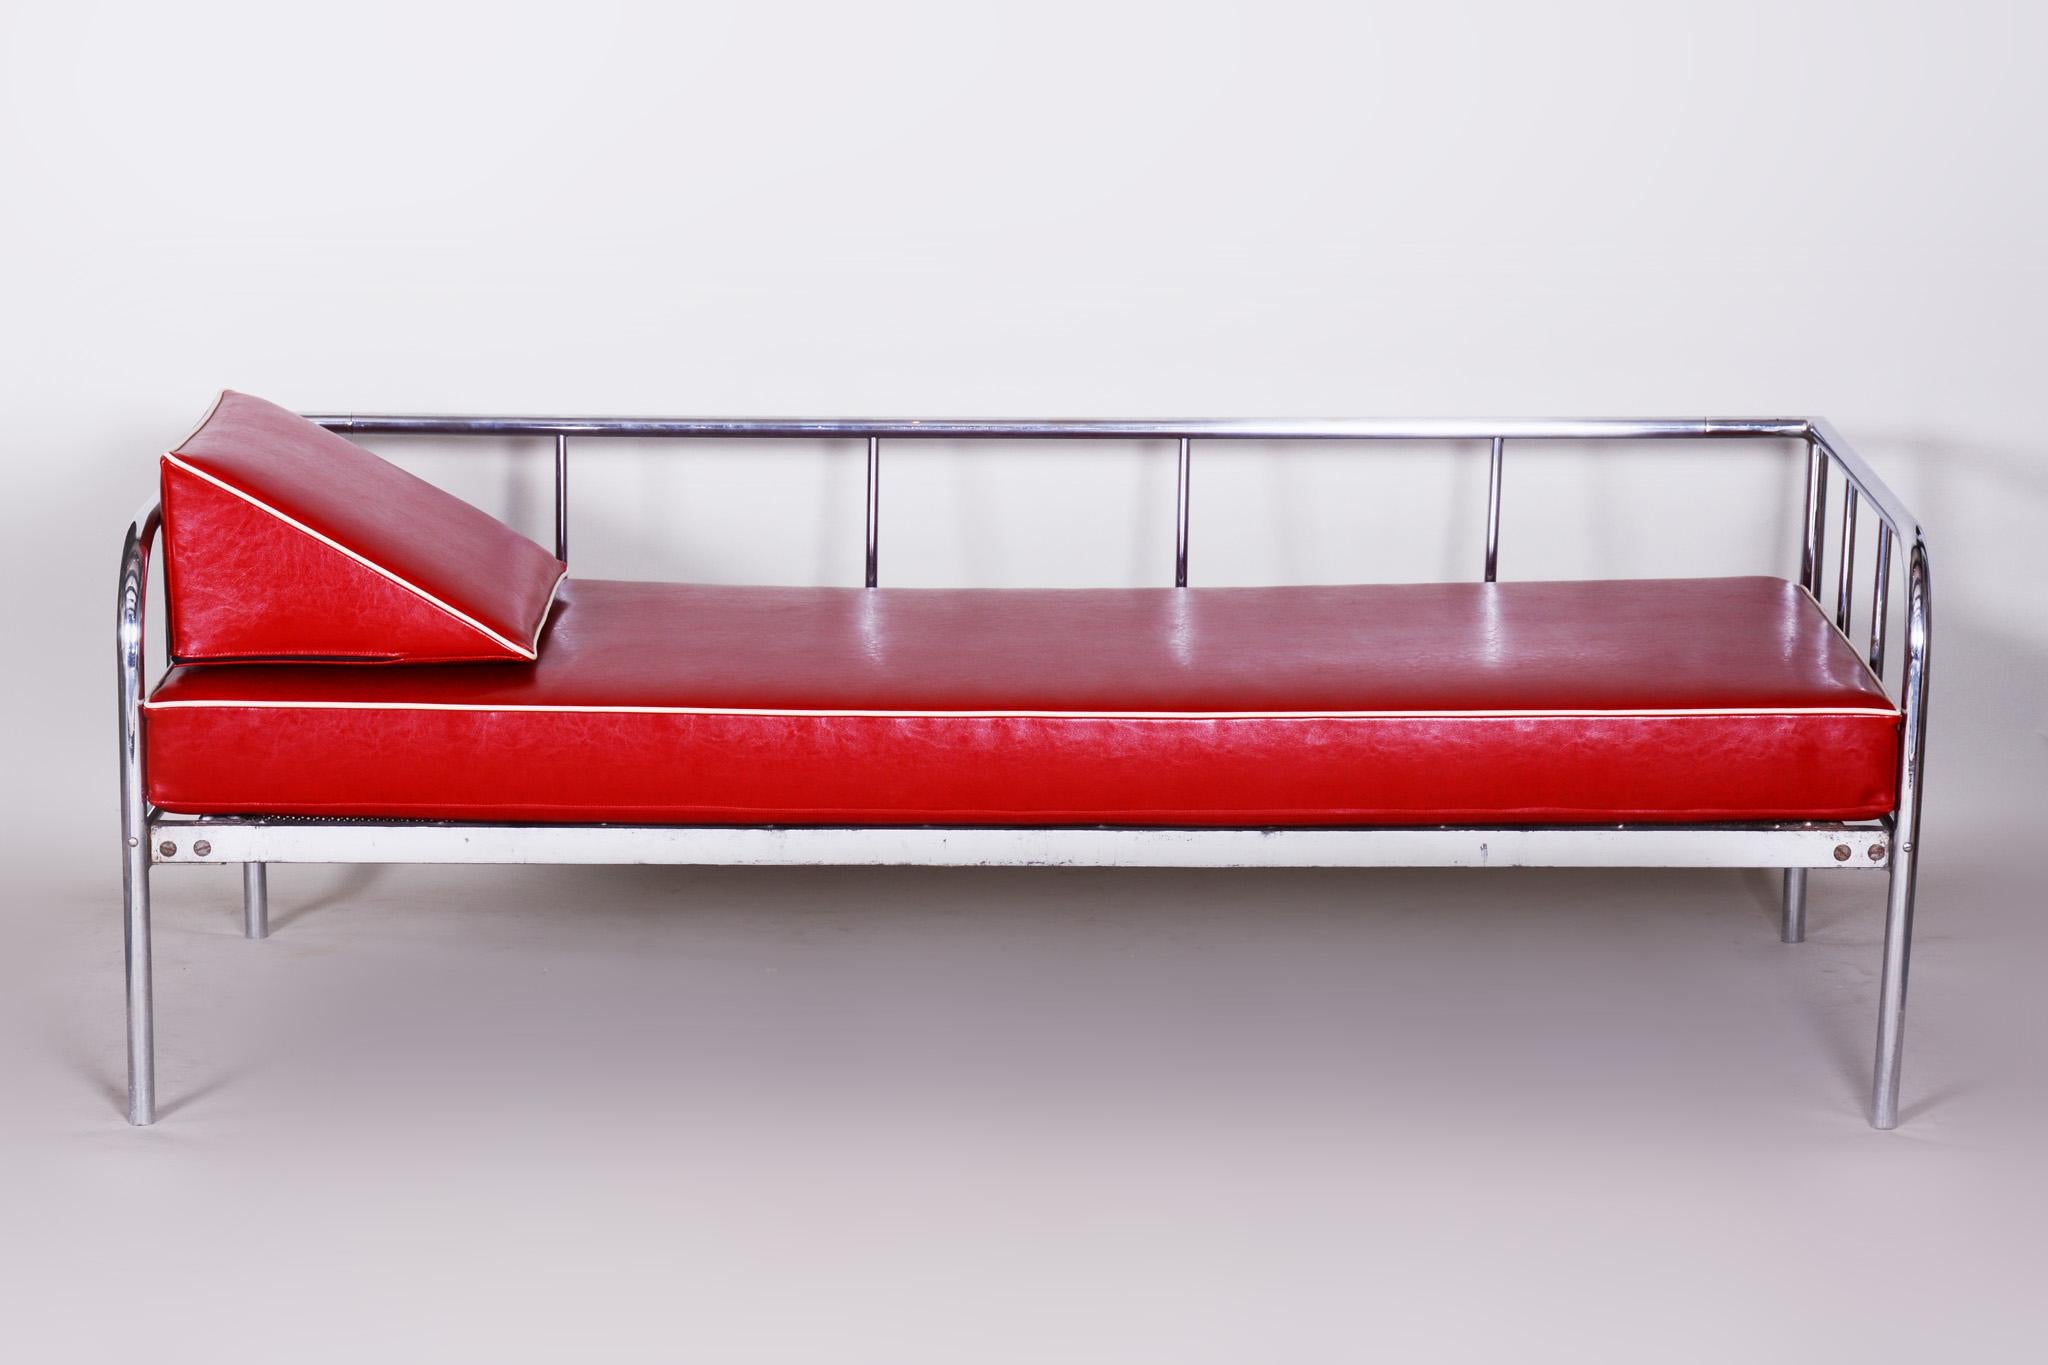 Canapé de style Bauhaus avec structure en acier tubulaire chromé.
Fabriqué par Vichr a Spol dans les années 1930.
L'acier tubulaire chromé est en parfait état d'origine.
Rembourrage en cuir de haute qualité
Source : Tchèque (Tchécoslovaquie).